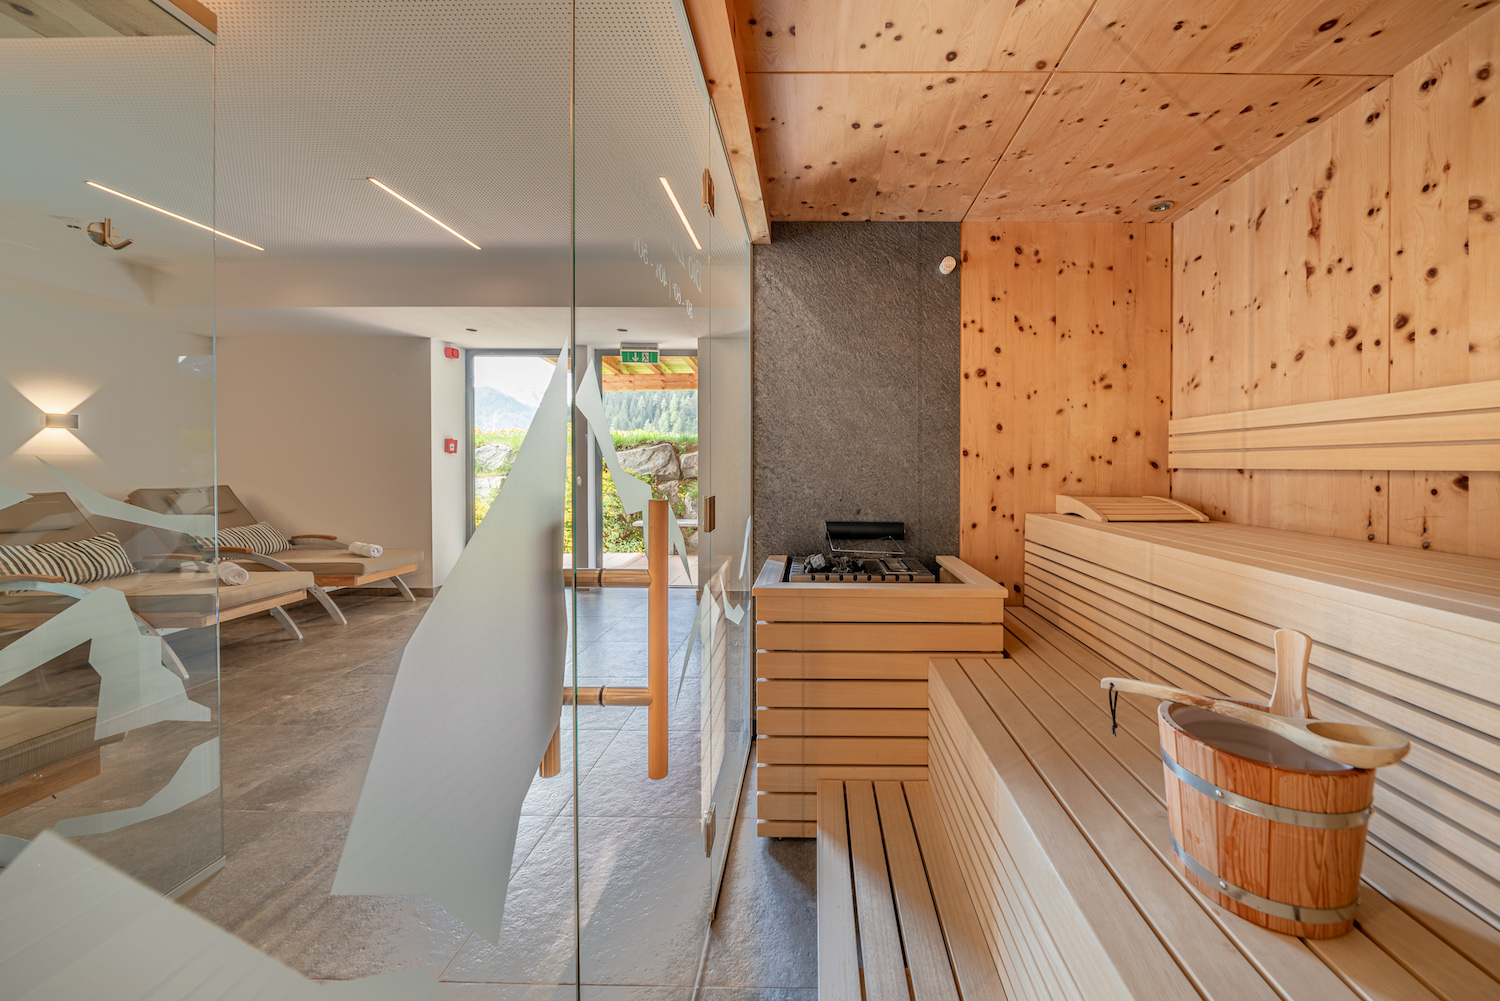 Espace-saunas pour se relaxer